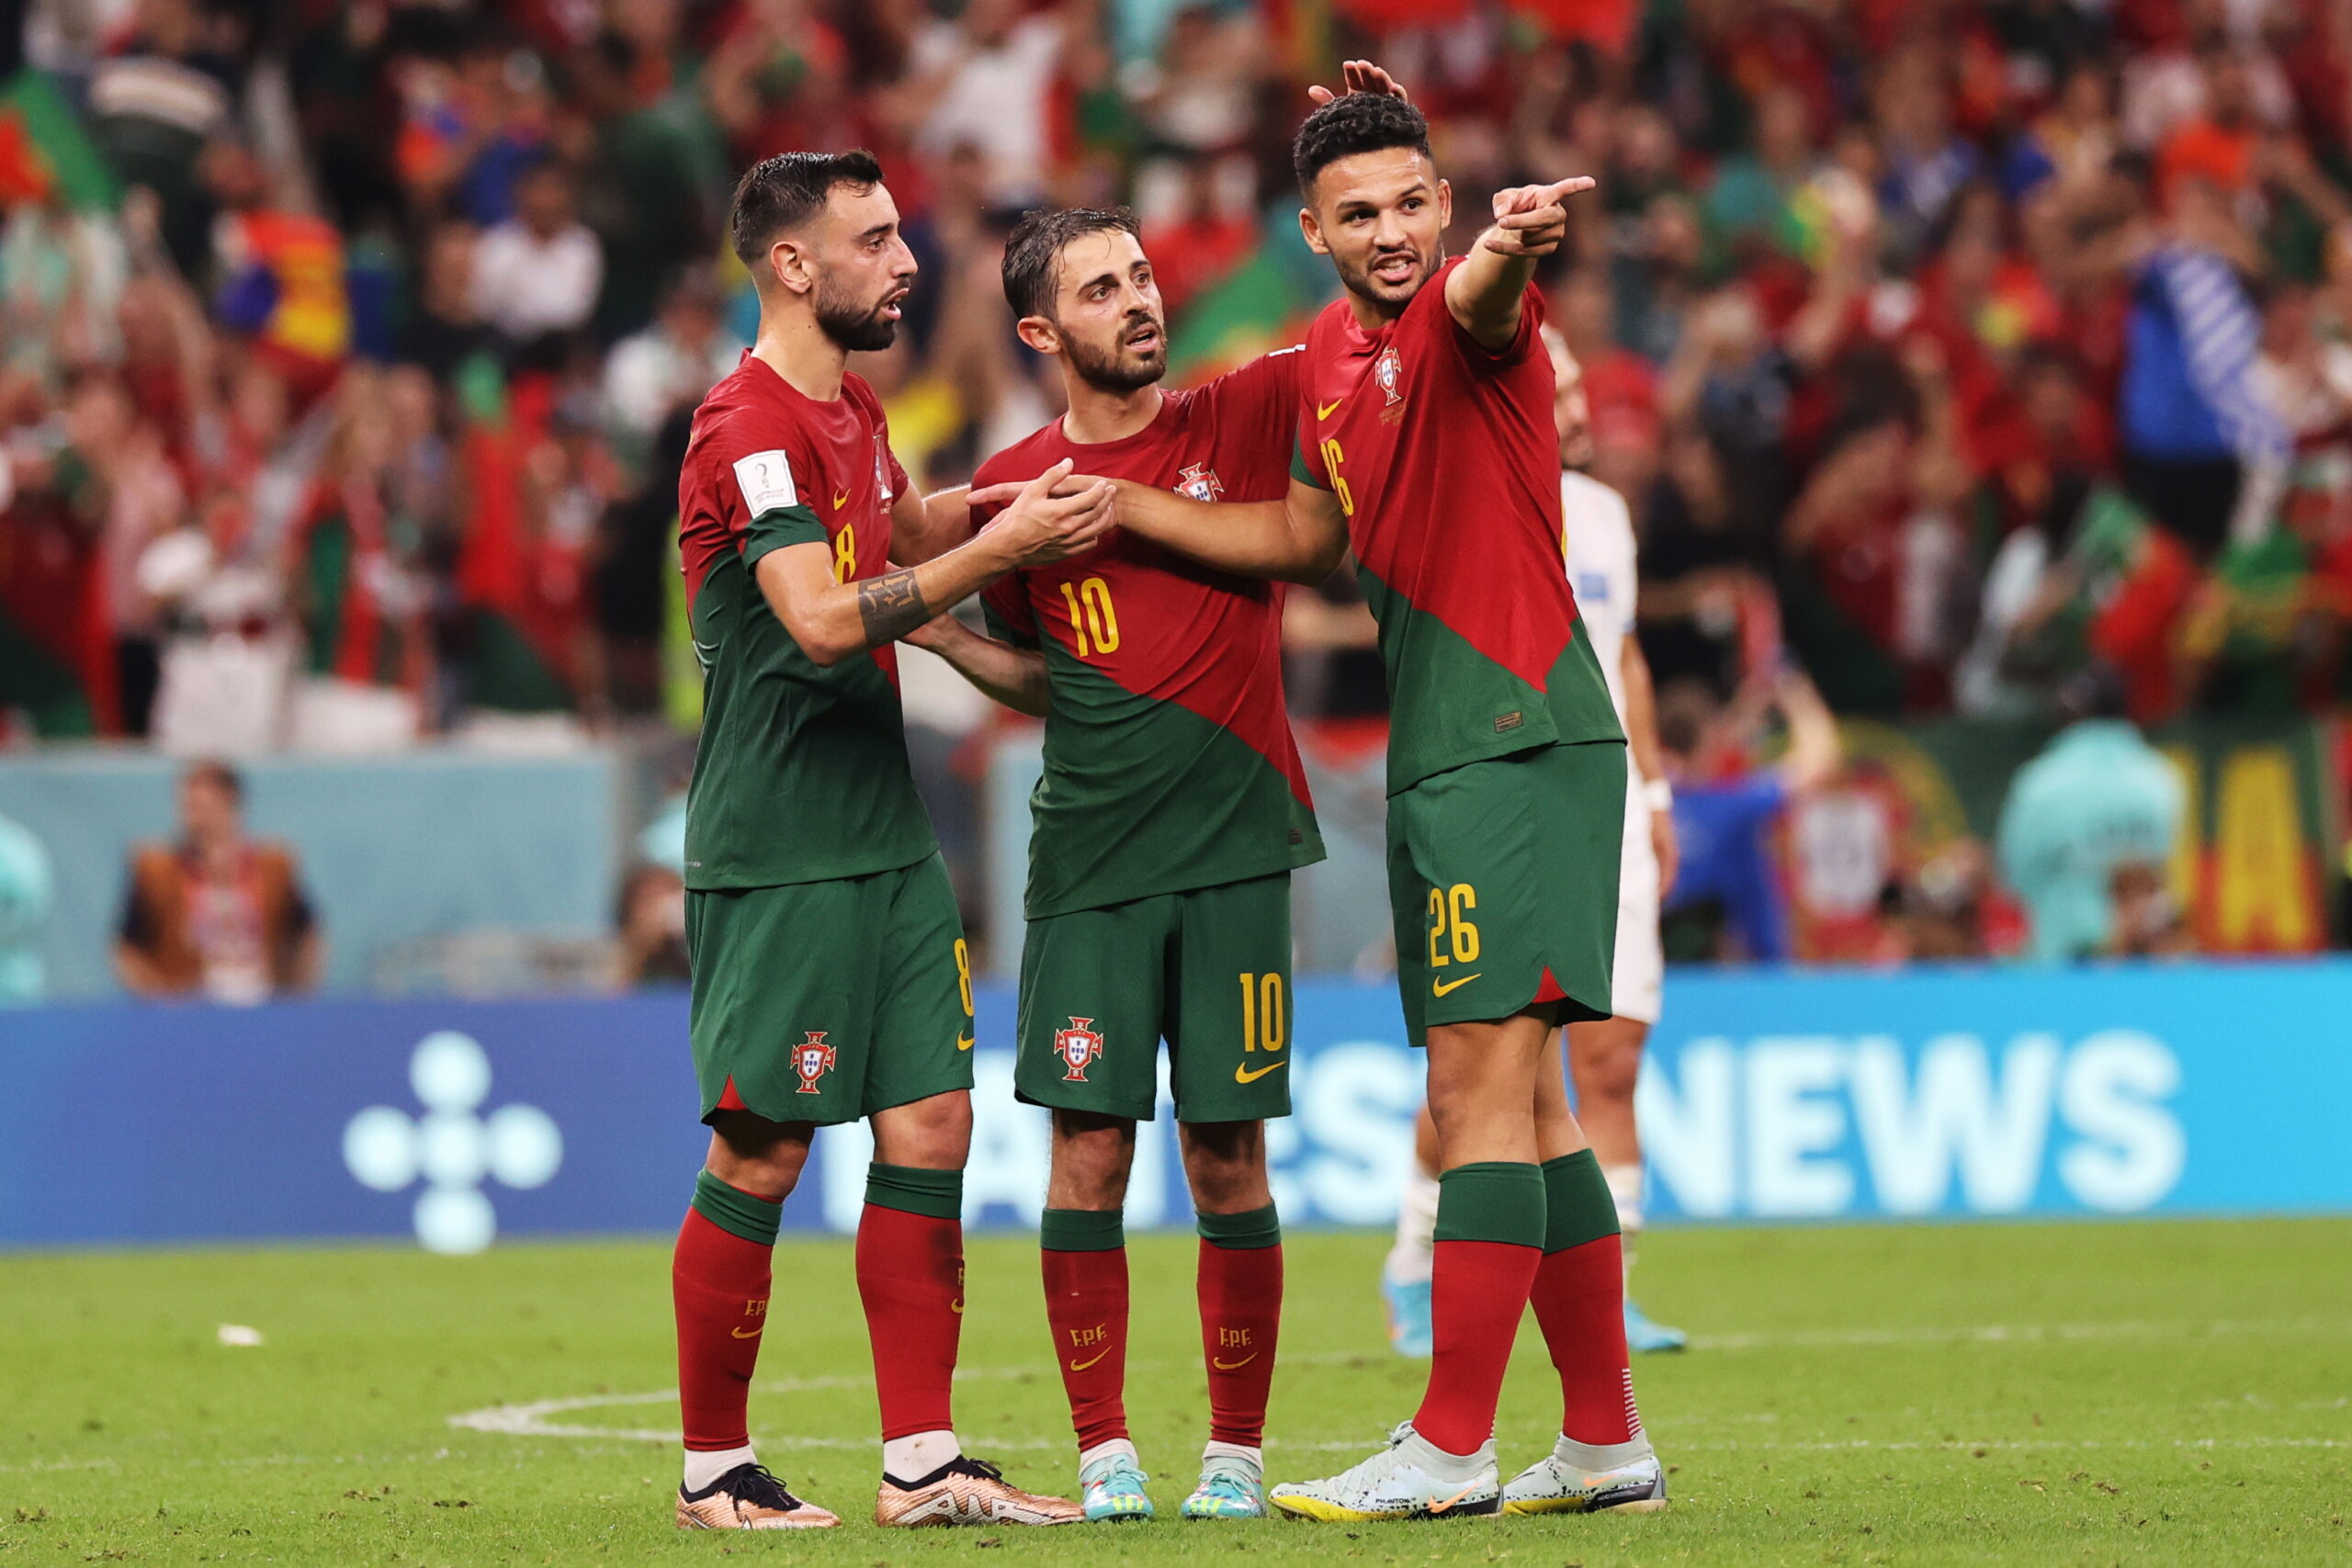 Μουντιάλ 2022, Πορτογαλία - Ουρουγουάη 2-0: Μπρούνο Φερνάντες και Ρονάλντο οδήγησαν την ομάδα του Σάντος στους 16